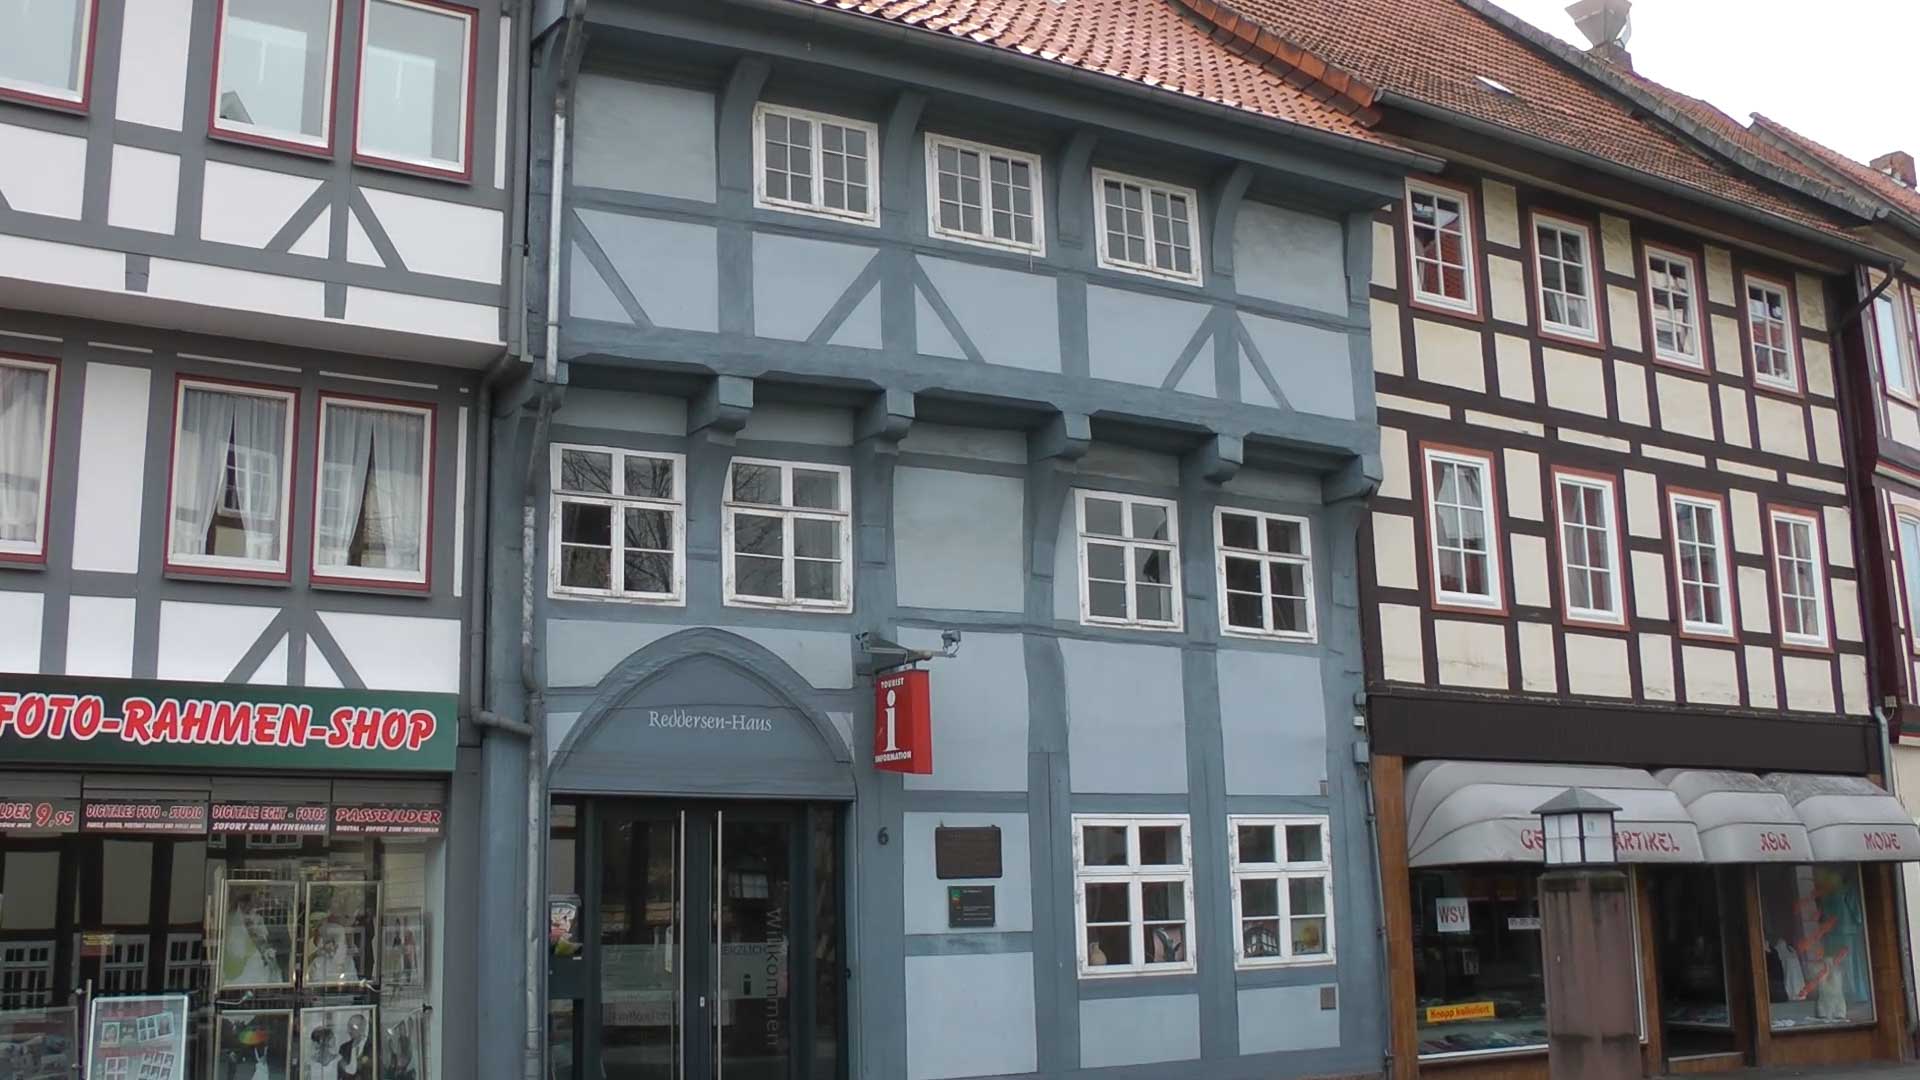 Reddersen-Haus